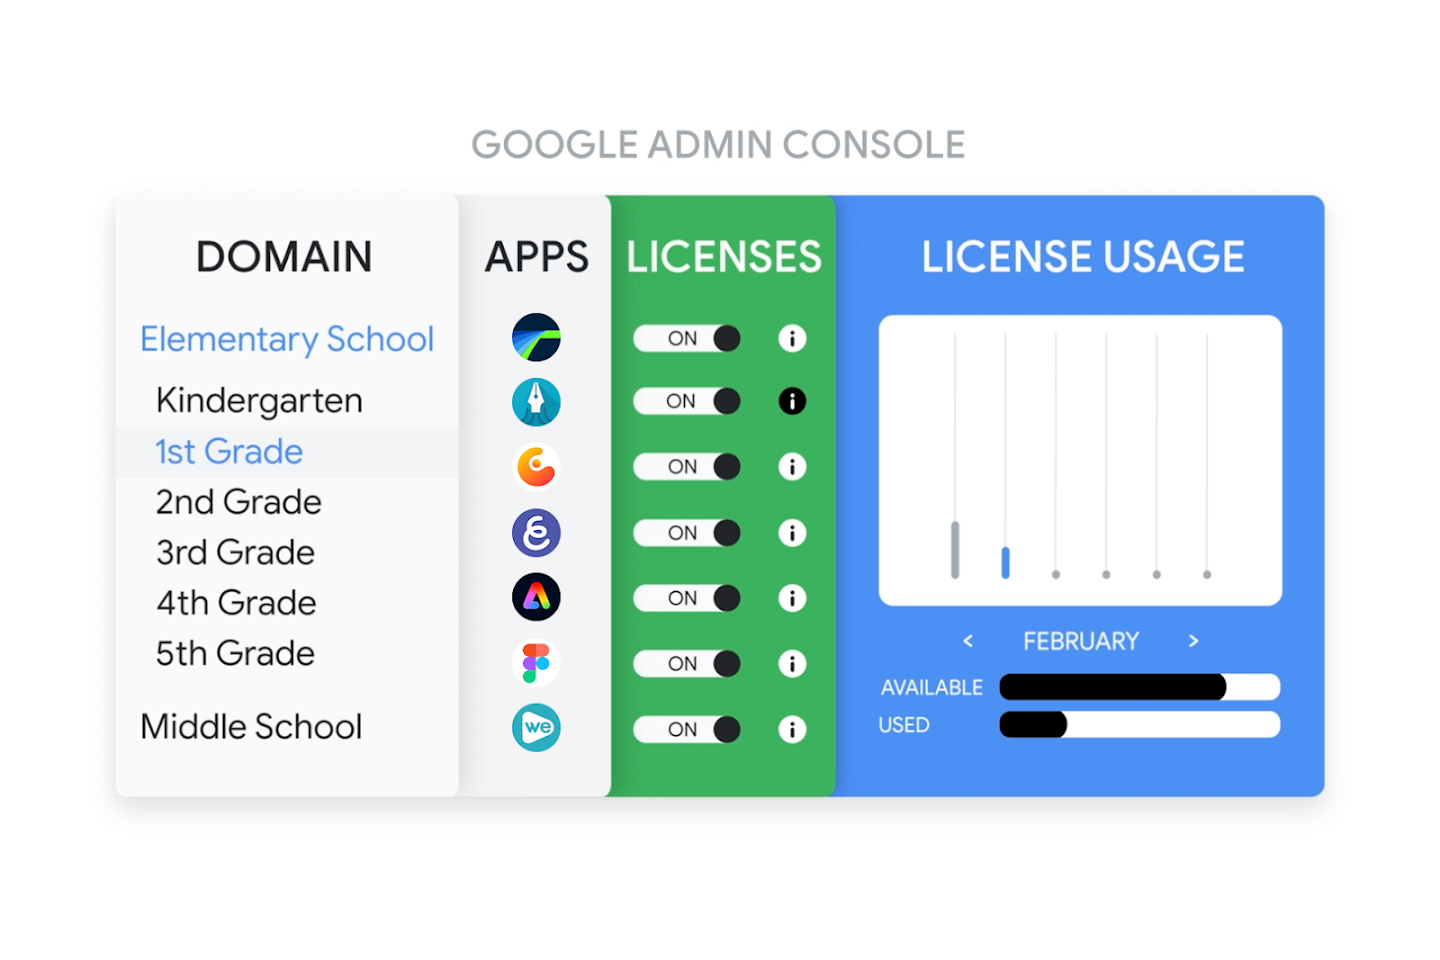 Imagen que muestra el uso de licencias de aplicaciones en la consola de administración de Google, y cómo se aprovisionan aplicaciones a un estudiante